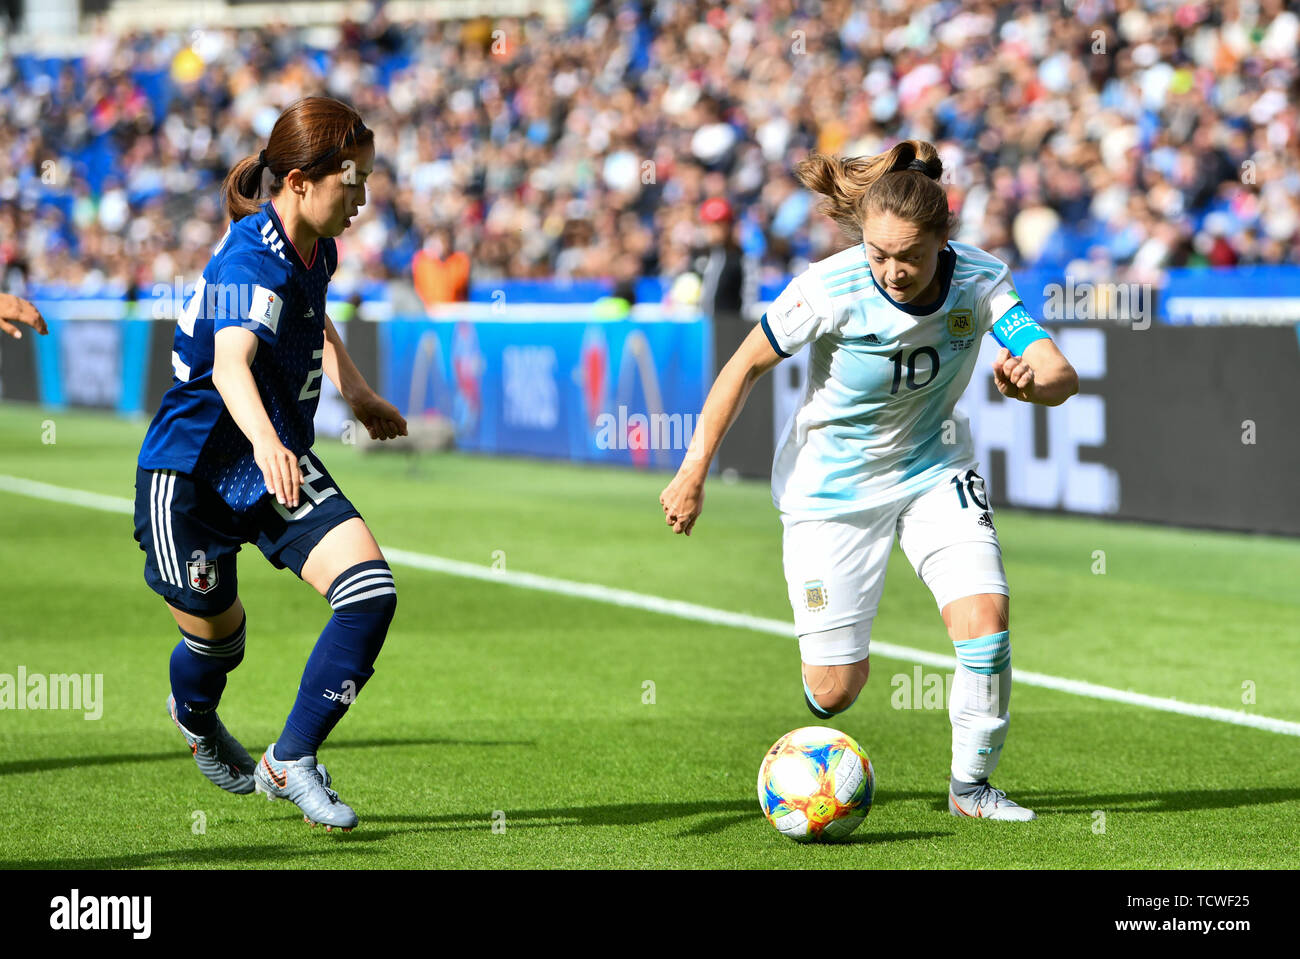 10 junio 2019 France Fútbol Copa Mundial Francia Argentina contra Japón Risa Shimizu (Japón) (22) mira detrás de Estefania Romina Banini (Argentinien) (10 Fotografía de stock - Alamy